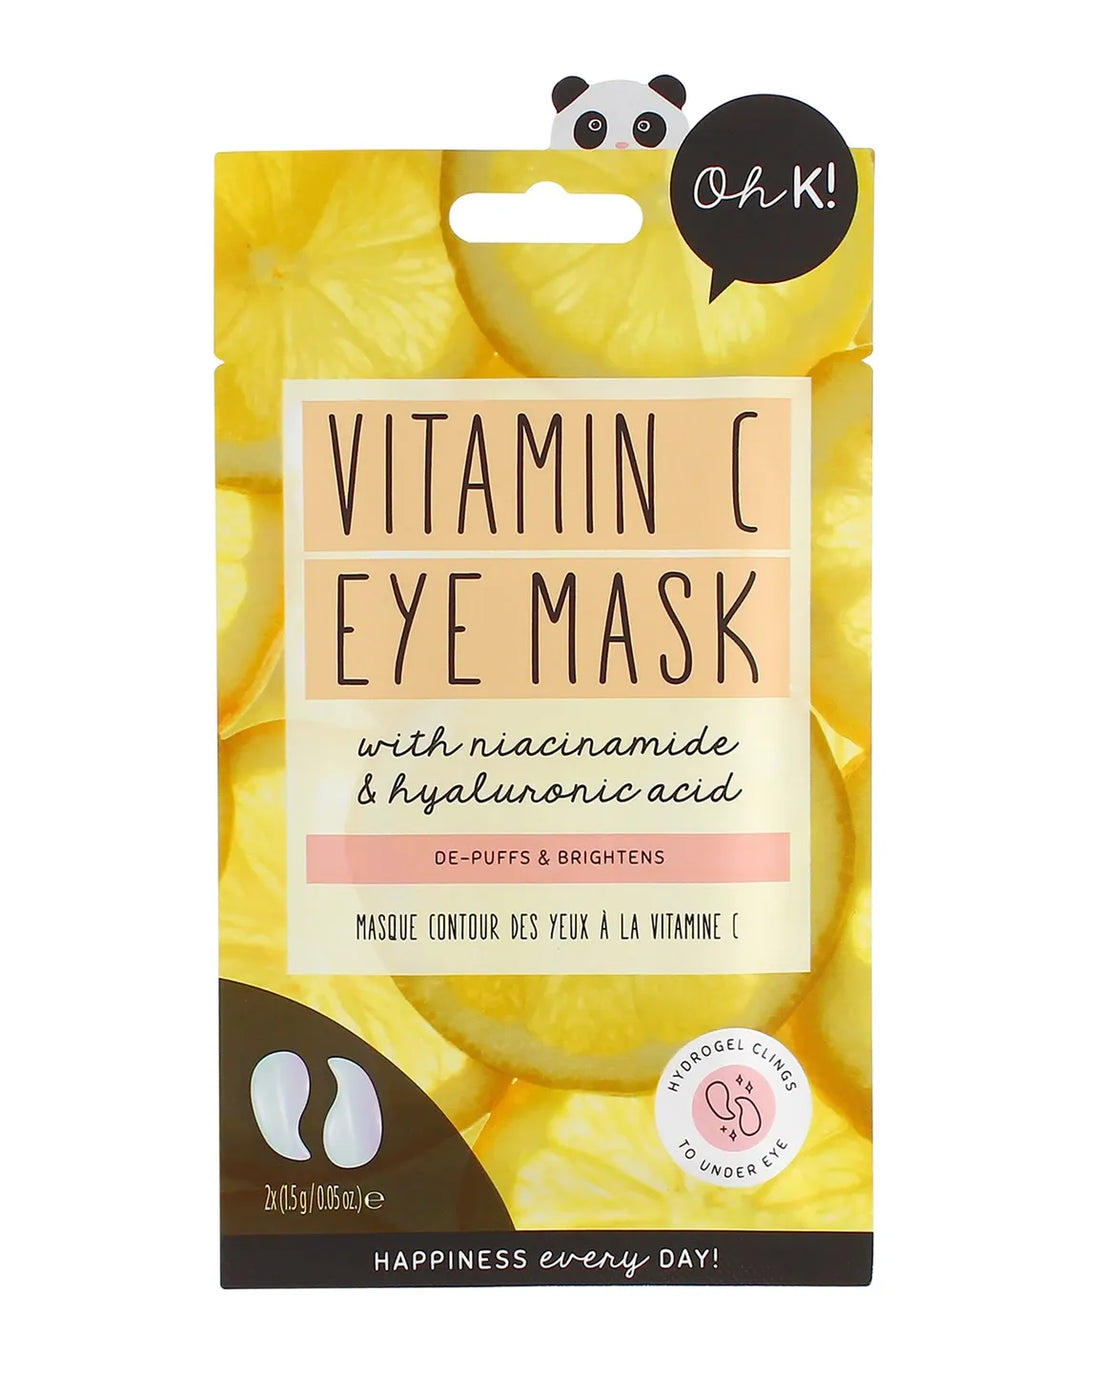 OH K! Vitamin C Eye Mask